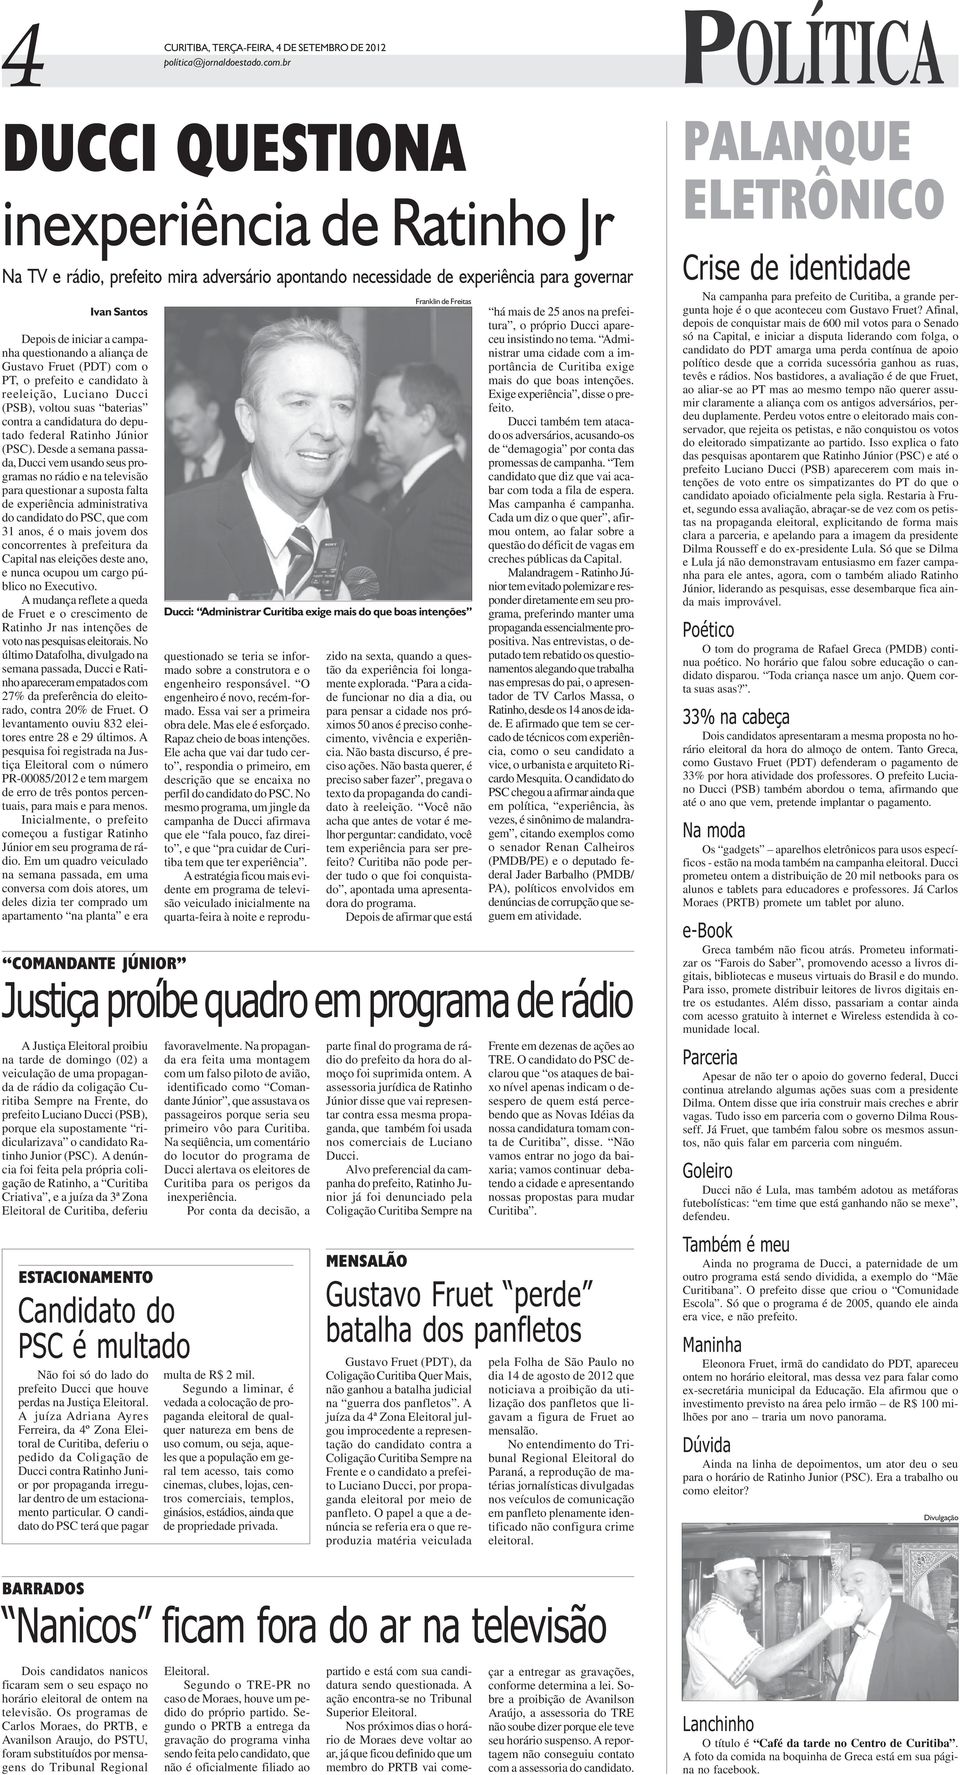 questionando a aliança de Gustavo Fruet (PDT) com o PT, o prefeito e candidato à reeleição, Luciano Ducci (PSB), voltou suas baterias contra a candidatura do deputado federal Ratinho Júnior (PSC).